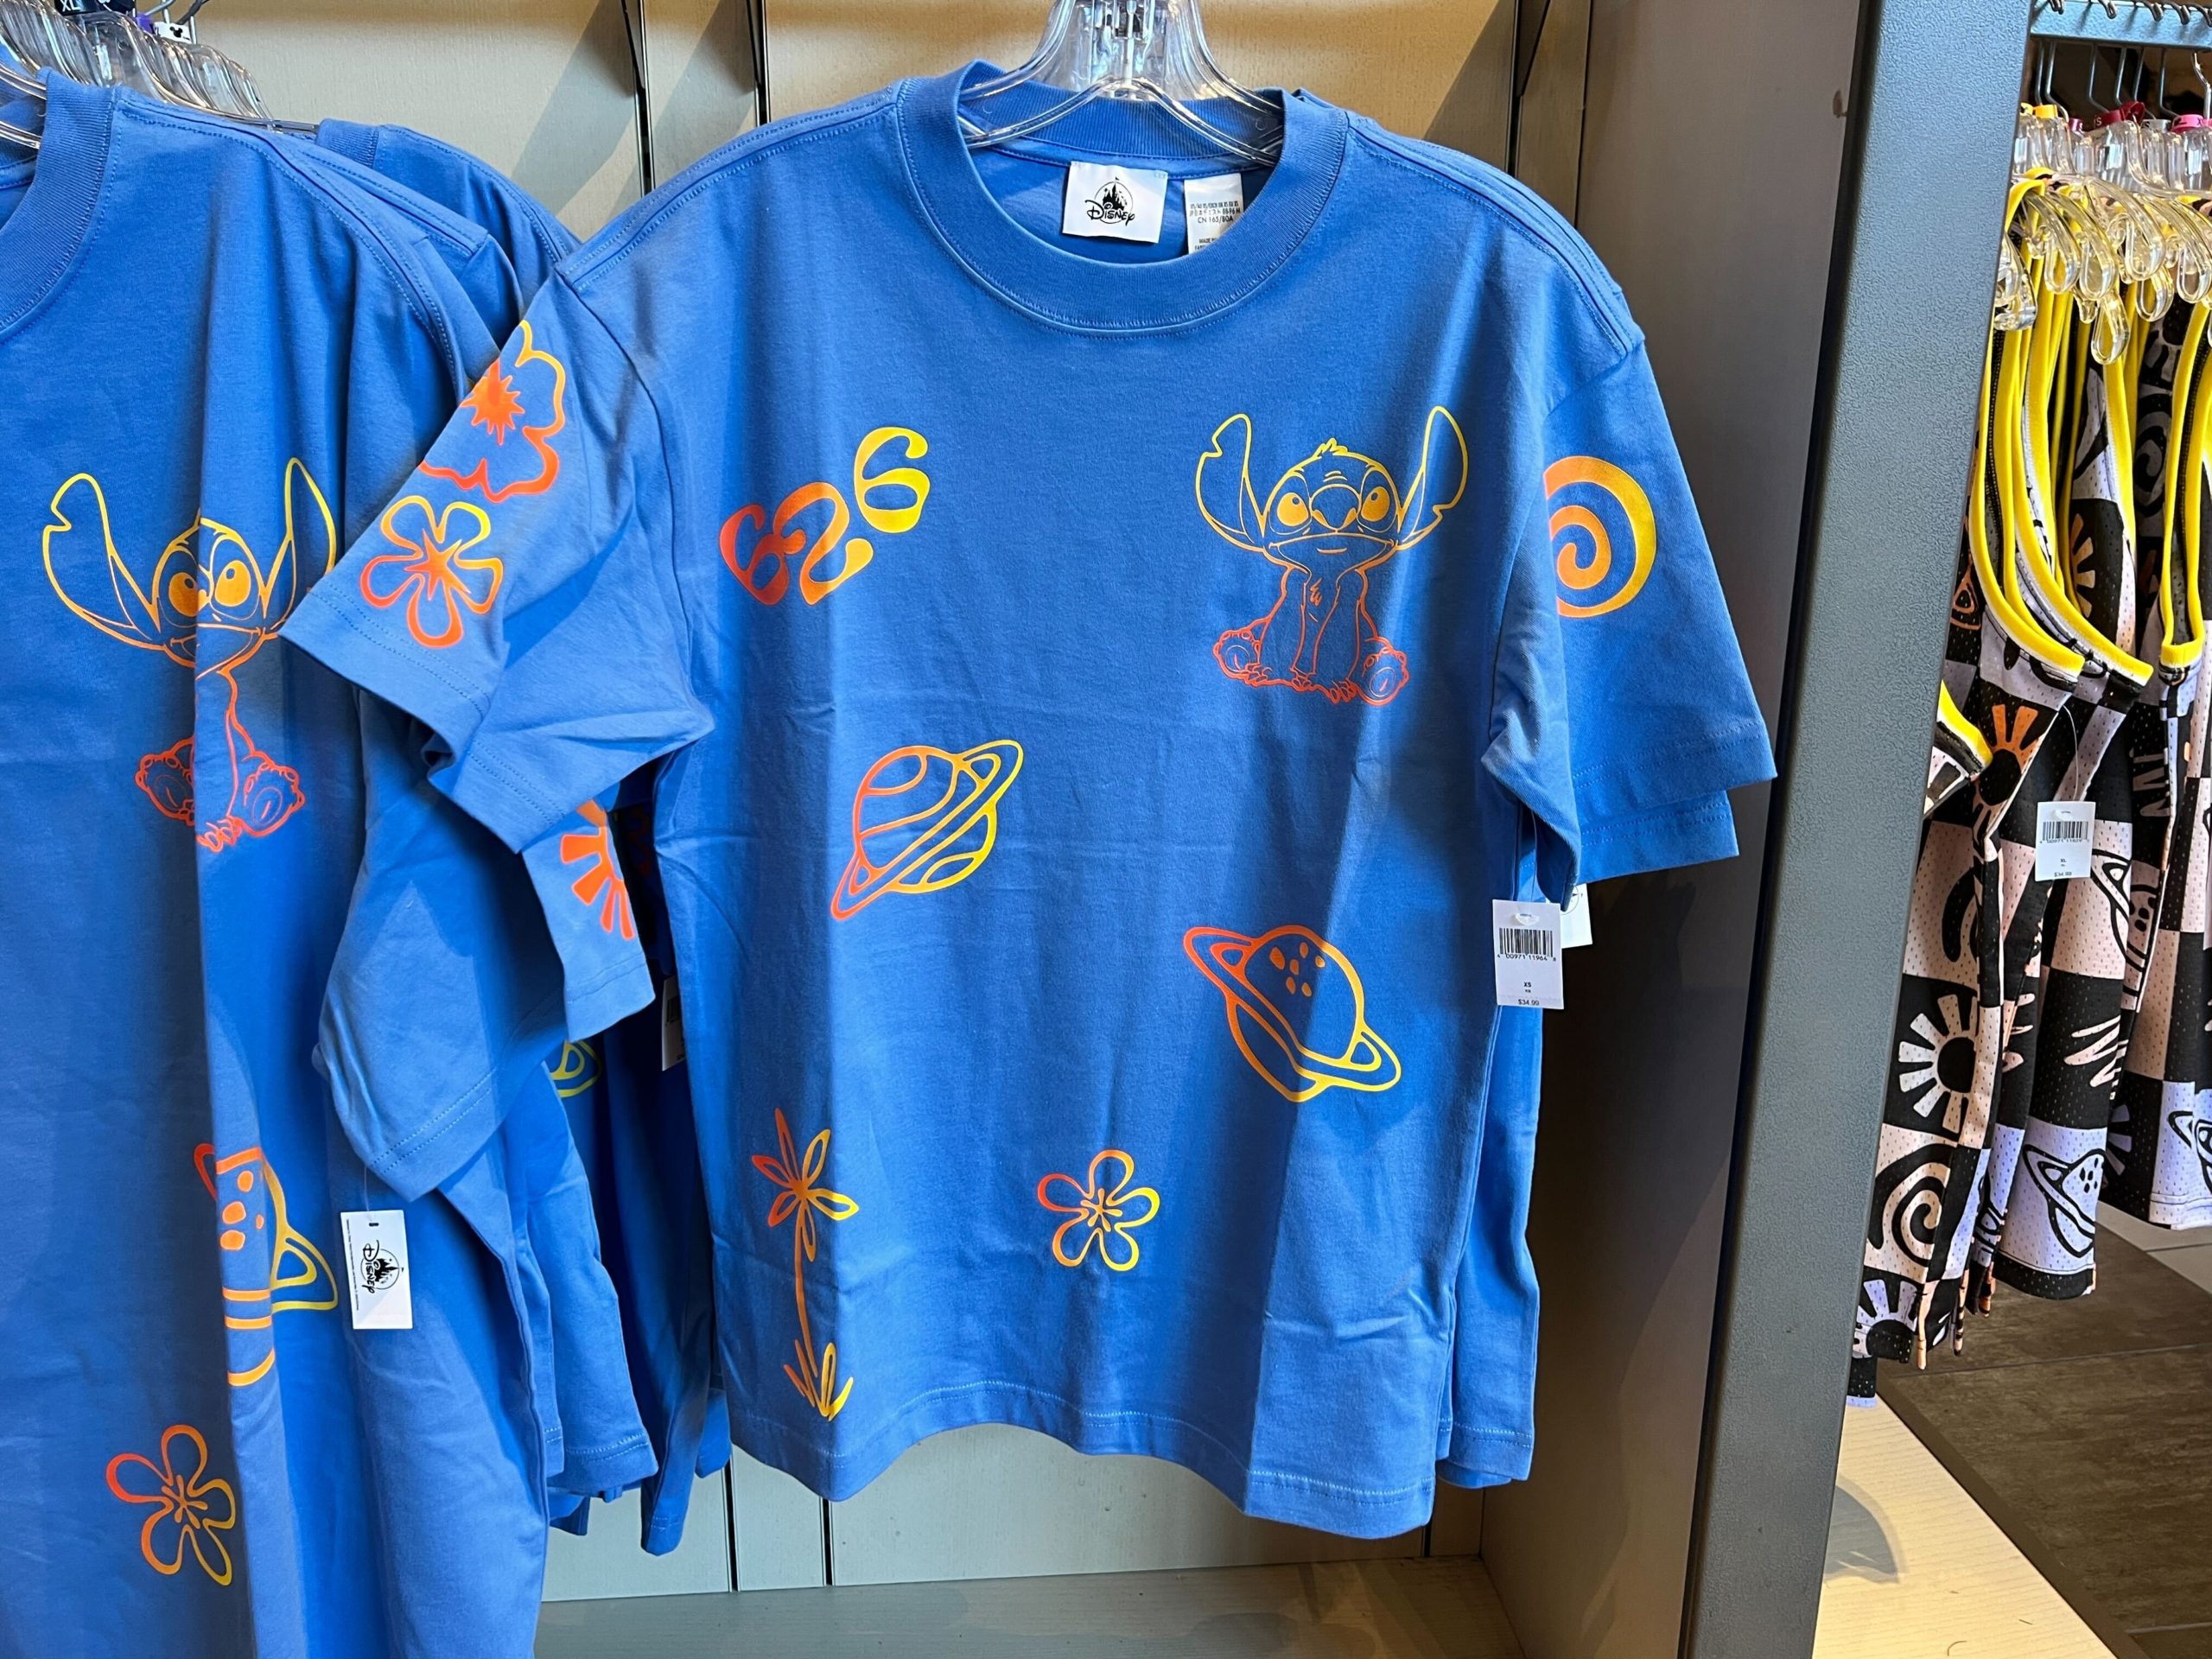 Stitch Merchandise